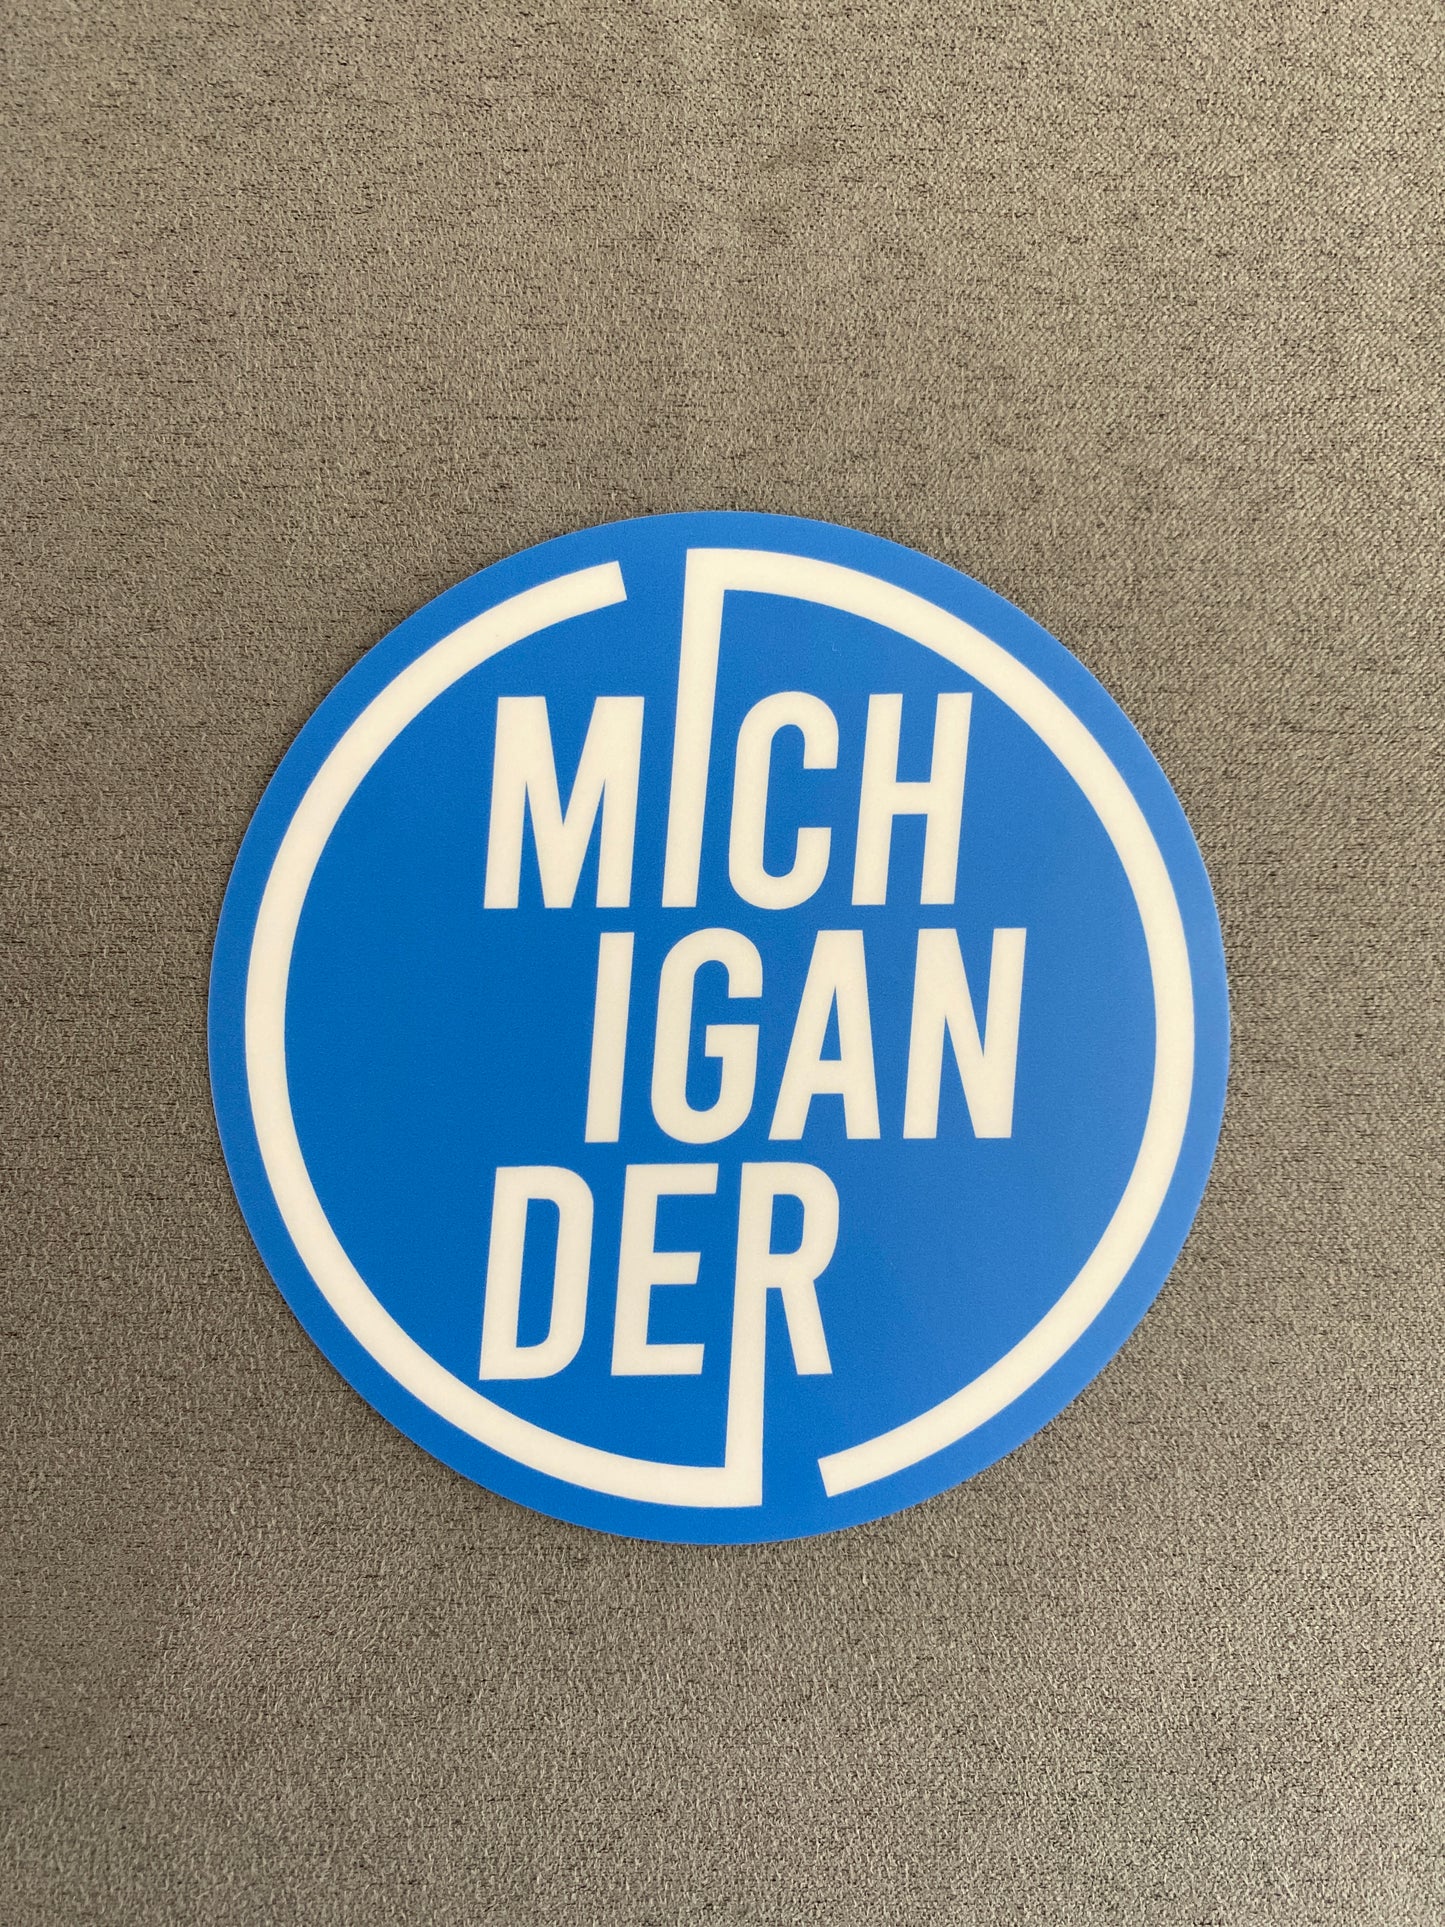 Michigander 4x4 Sticker